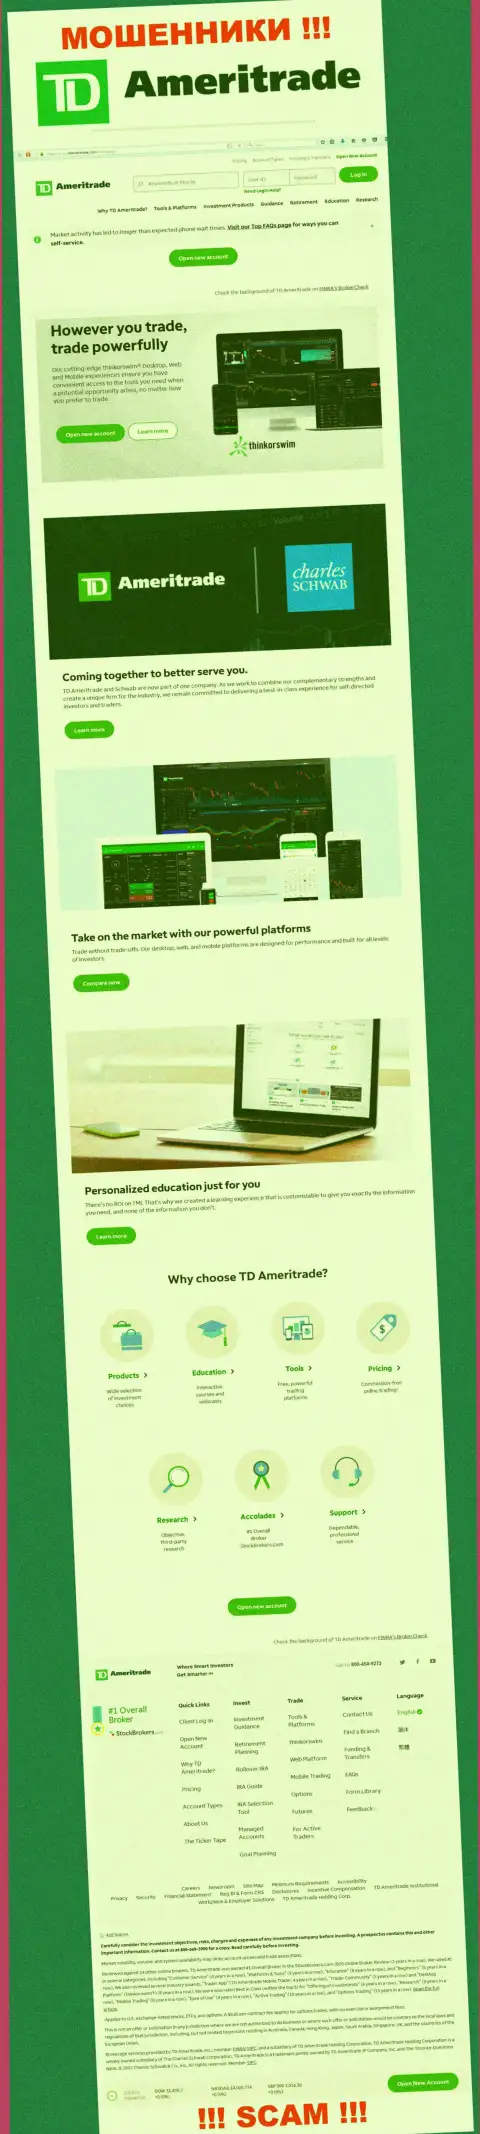 Фейковая информация от компании АмериТрейд на официальном онлайн-сервисе мошенников